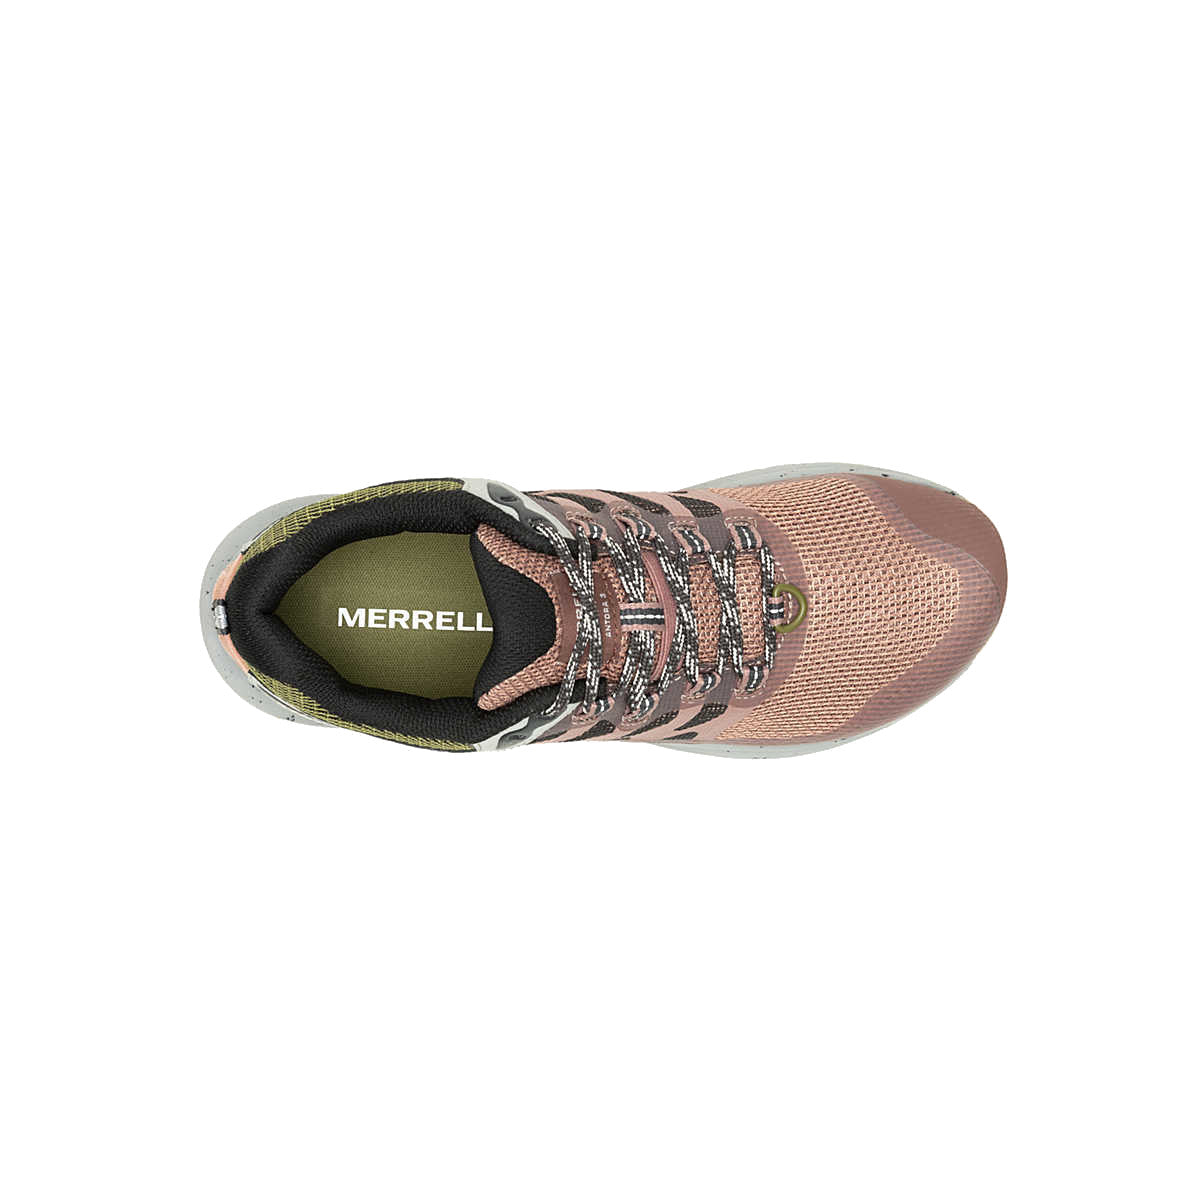 Merrell Women's Women's Antora 3 Sneakers - Burlwood/Avocado